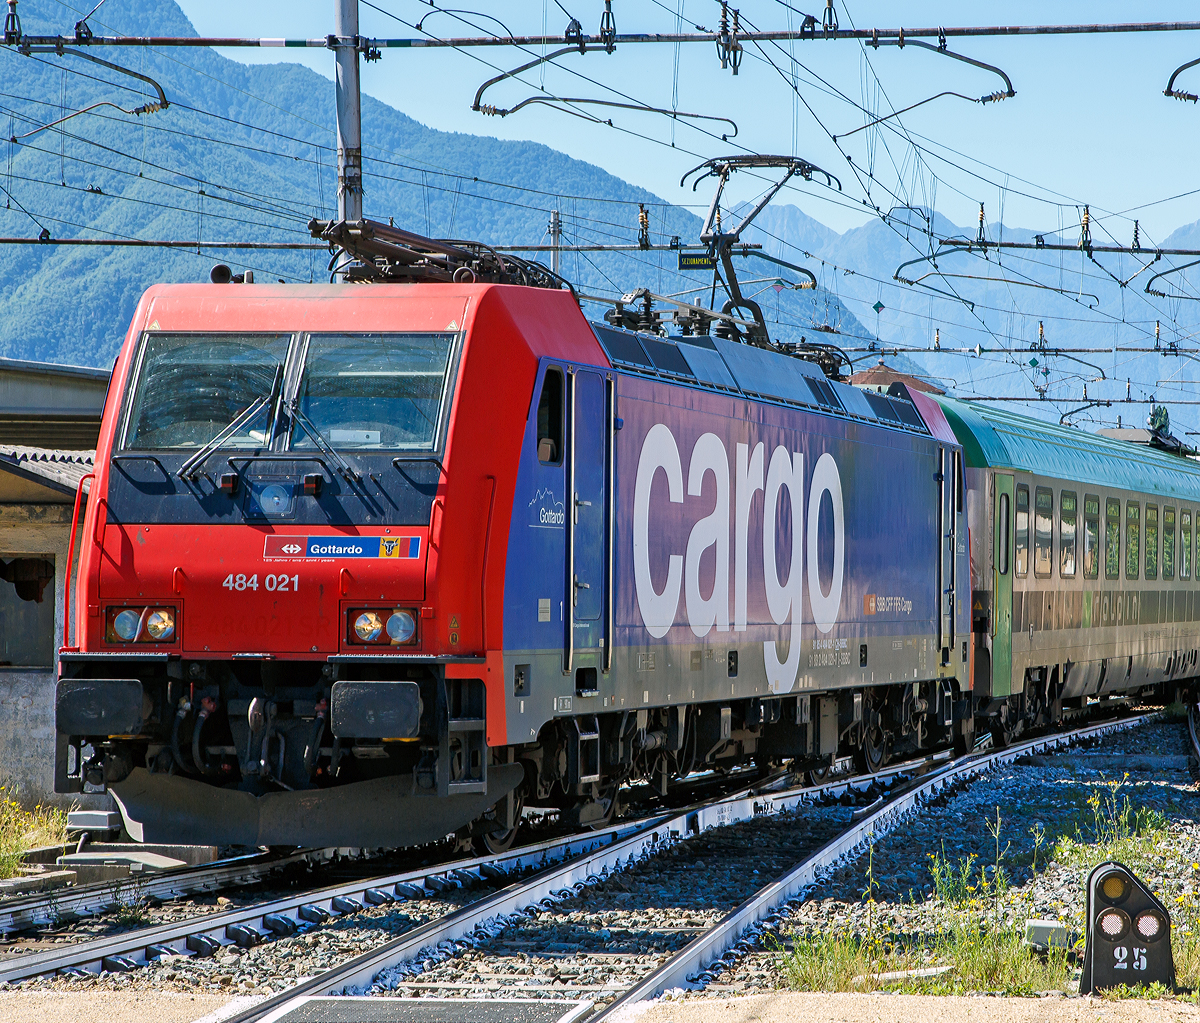 Als Lokportrait……
Die SBB Cargo Re 484 021  Gotthardo  (91 85 4 484 021-1 CH-SBBC / 91 83 2 484 021-7 I-SBBC) kommt am 22.06.2016 mit einem Ralpin-Zug (Rola-Zug) im Bahnhof Domodossola aus Richtung Süden an. Im Domodossola wird sie dann von einer BLS Re 485 (Traxx F140 AC1) abgelöst und den Zug dann, via dem Simplon-Tunnel nach Freiburg im Breisgau bringt.

Die TRAXX F140 MS2 wurde 2006 von Bombardier in Kassel unter der Fabriknummer 34297 gebaut. Sie hat die Zulassung und Zugsicherung für die Schweiz und Italien.

Die Re 484 der Schweizerischen Bundesbahnen (SBB) ist eine Baureihe von Vierstrom-Elektrolokomotiven, die von Drehstrom-Asynchronmotoren angetrieben wird. Die Lokomotiven stammen aus der TRAXX-Familie von Bombardier Transportation und tragen die Herstellerbezeichnung TRAXX F140 MS2.

2003 entschied sich SBB Cargo als erster Betreiber in Europa, die TRAXX-Plattform von Bombardiers (1,5kV / 3kV DC + 15kV / 25kV AC) mit vier Spannungen zu bestellen. Bis dahin existierten diese Maschinen nur auf Papier. Für Bombardier stellte der Auftrag einen solchen Meilenstein dar, dass für die SBB Cargo 484 001, die erste TRAXX-Lokomotive, die auf allen vier wichtigsten europäischen Fahrleitungssystemen eingesetzt werden konnte, die Seriennummer 34000 reserviert wurde.

Die SBB Cargo Re 484-Serie wurde in drei Tranchen ausgeliefert. Der erste Auftrag mit der Re 484 001-012, der im Jahr 2005 abgeschlossen wurden. Im selben Jahr wurde auch der erste Folgeauftrag von sechs Maschinen abgegeben (Re 484 013-018). 2007 wurden drei zusätzliche Maschinen gebaut (Re 484 019-021).
Die Maschinen werden ausschließlich für Dienstleistungen in Italien und der Schweiz seit Lieferung verwendet. Sie verfügen entsprechend über eine 15 kV 16,7 Hz Wechselstromausrüstung (AC) und eine 3 kV Gleichstromausrüstung (DC). Die Umrichteranlage würde auch den Einsatz unter den anderen in Europa verwendeten Stromsystemen 25 kV 50 Hz (AC) und 1,5 kV (DC) erlauben, jedoch ist die Lokomotive nicht mit den dafür notwendigen Zugsicherungssystemen ausgerüstet.

Die Re 484 ist eine Weiterentwicklung der TRAXX-Baureihe F140 AC1 (DB BR 185, SBB Re 482, u. a.), gegenüber welcher sie als augenfälligste Änderung einen überarbeiteten Lokkasten besitzt. Die Änderung erfolgte, um den neuen, strengeren Sicherheitsnormen bezüglich Crashfestigkeit zu genügen. Sie ist am einfachsten an der Lokfront zu erkennen, welche im Bereich der unteren Signalleuchten gerade nach unten verläuft und nicht eingezogen ist wie bei der ersten Serie der BR 185. Außerdem ist unterhalb der Stirnfenster eine Klappe für den Ausbau der Klimaanlage angebracht und die Anzahl der Griffstangen im Frontbereich erhöht worden. Die Lokomotive erhielt auch eine neue wassergekühlte IGBT Umrichteranlage.

TECHNISCHE DATEN:
Spurweite:  1.435 mm (Normalspur)
Achsfolge:  Bo'Bo'
Gebaute Stückzahl:  21
Umgrenzungsprofil: UIC 505-1
Länge über Puffer: 18.900 mm
Virtueller Drehgestellmittenabstand: 10.440 mm
Radsatzabstand im Drehgestell: 2.600 mm
Höhe:  4.283 mm
Breite: 2.977 mm
Dienstgewicht: 85,4 t
Radsatzlast: 21.5 t
Höchstgeschwindigkeit: 140 km/h
Stundenleistung: 5.600 kW
Anfahrzugkraft: 300 kN
Max. elektrische Bremskraft:  240 kN 
Leistung elektrische Bremse:  5.6 MW (bei AC) / 2.6 MW (bei DC)
Treibraddurchmesser:  1.250 mm (neu)/ 1.170 mm (abgenutzt)
Motorentyp:  Drehstrom-Asynchronmotoren
Stromrichter:  2 x MITRAC TC 3300
Anzahl der Fahrmotoren:  4
Antrieb: Tatzlagerantrieb
Stromsystem: 15 kV 16,7 Hz Wechselstrom (AC) und 3 kV Gleichstrom (25 kV 50 Hz AC und 1,5 kV DC wären aber auch möglich)
Anhängelasten: bis 6 Promille 1.950 t, bis 12 Promille 1.620 t und bis 26 Promille 700 t 
Fördervolumen des Kompressors: 2.400 l/min
Hauptluftbehältervolumen: 800 l
Besonderheiten: Automatische Feuerlöschanlage, Rückseheinrichtung (Videokameras)